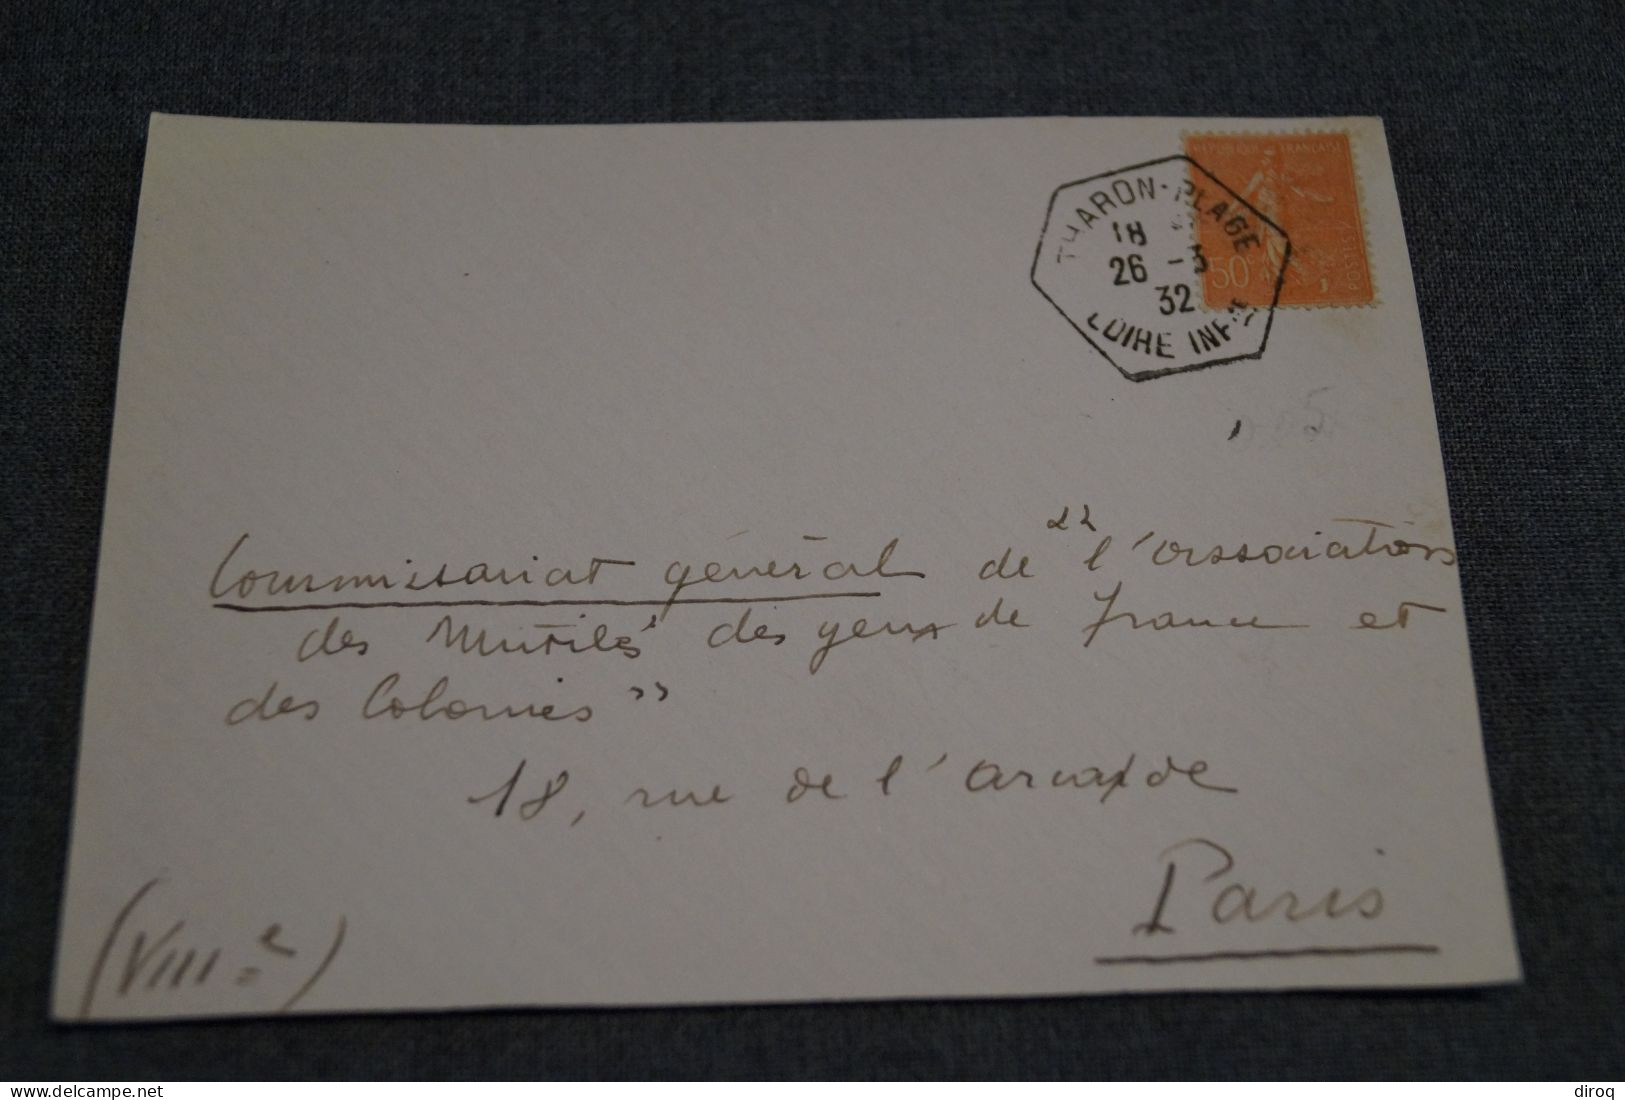 Superbe Ancien Envoi 1932 , Tharon Plage,très Belle Oblitération, Pour Collection - Briefe U. Dokumente